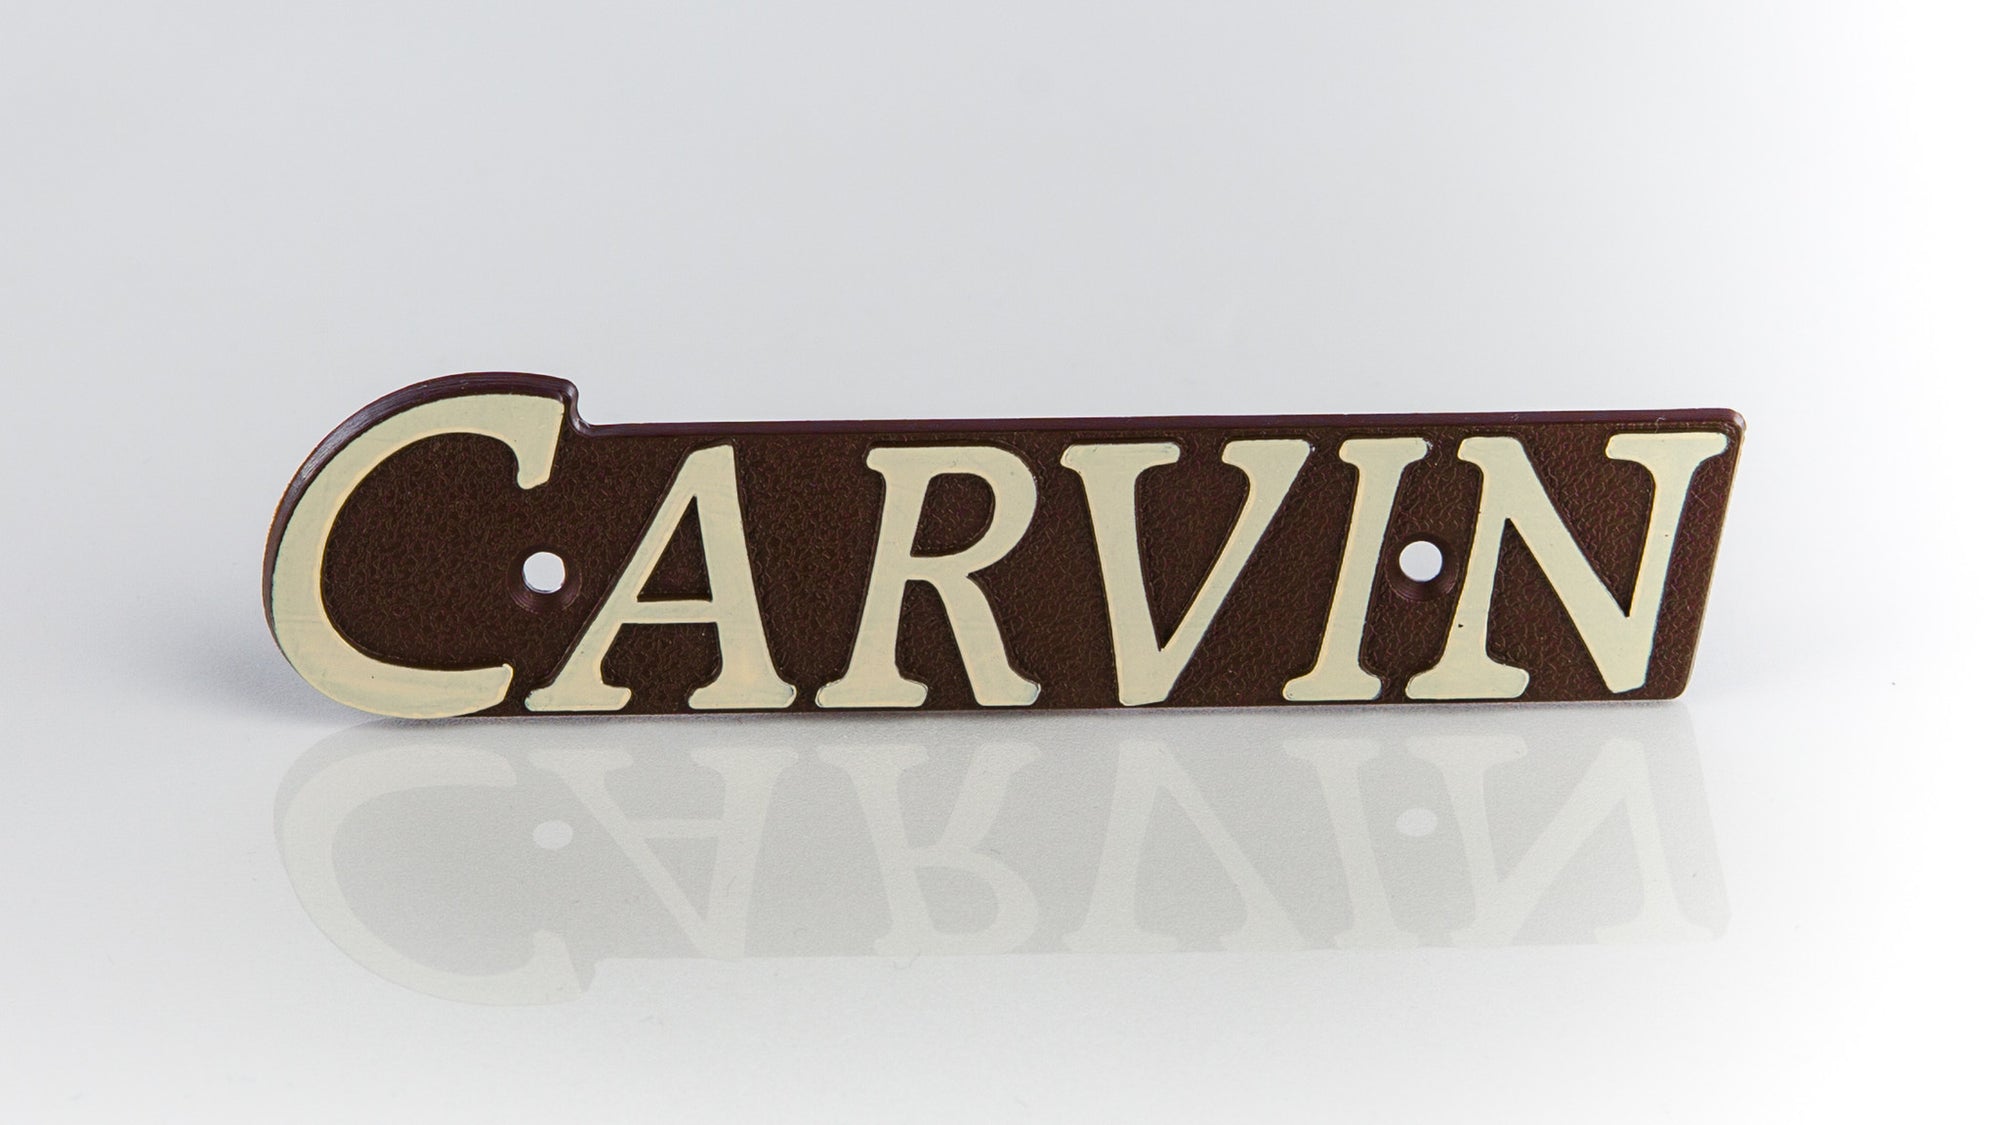 Carvin logo badge for vintage series amlifier